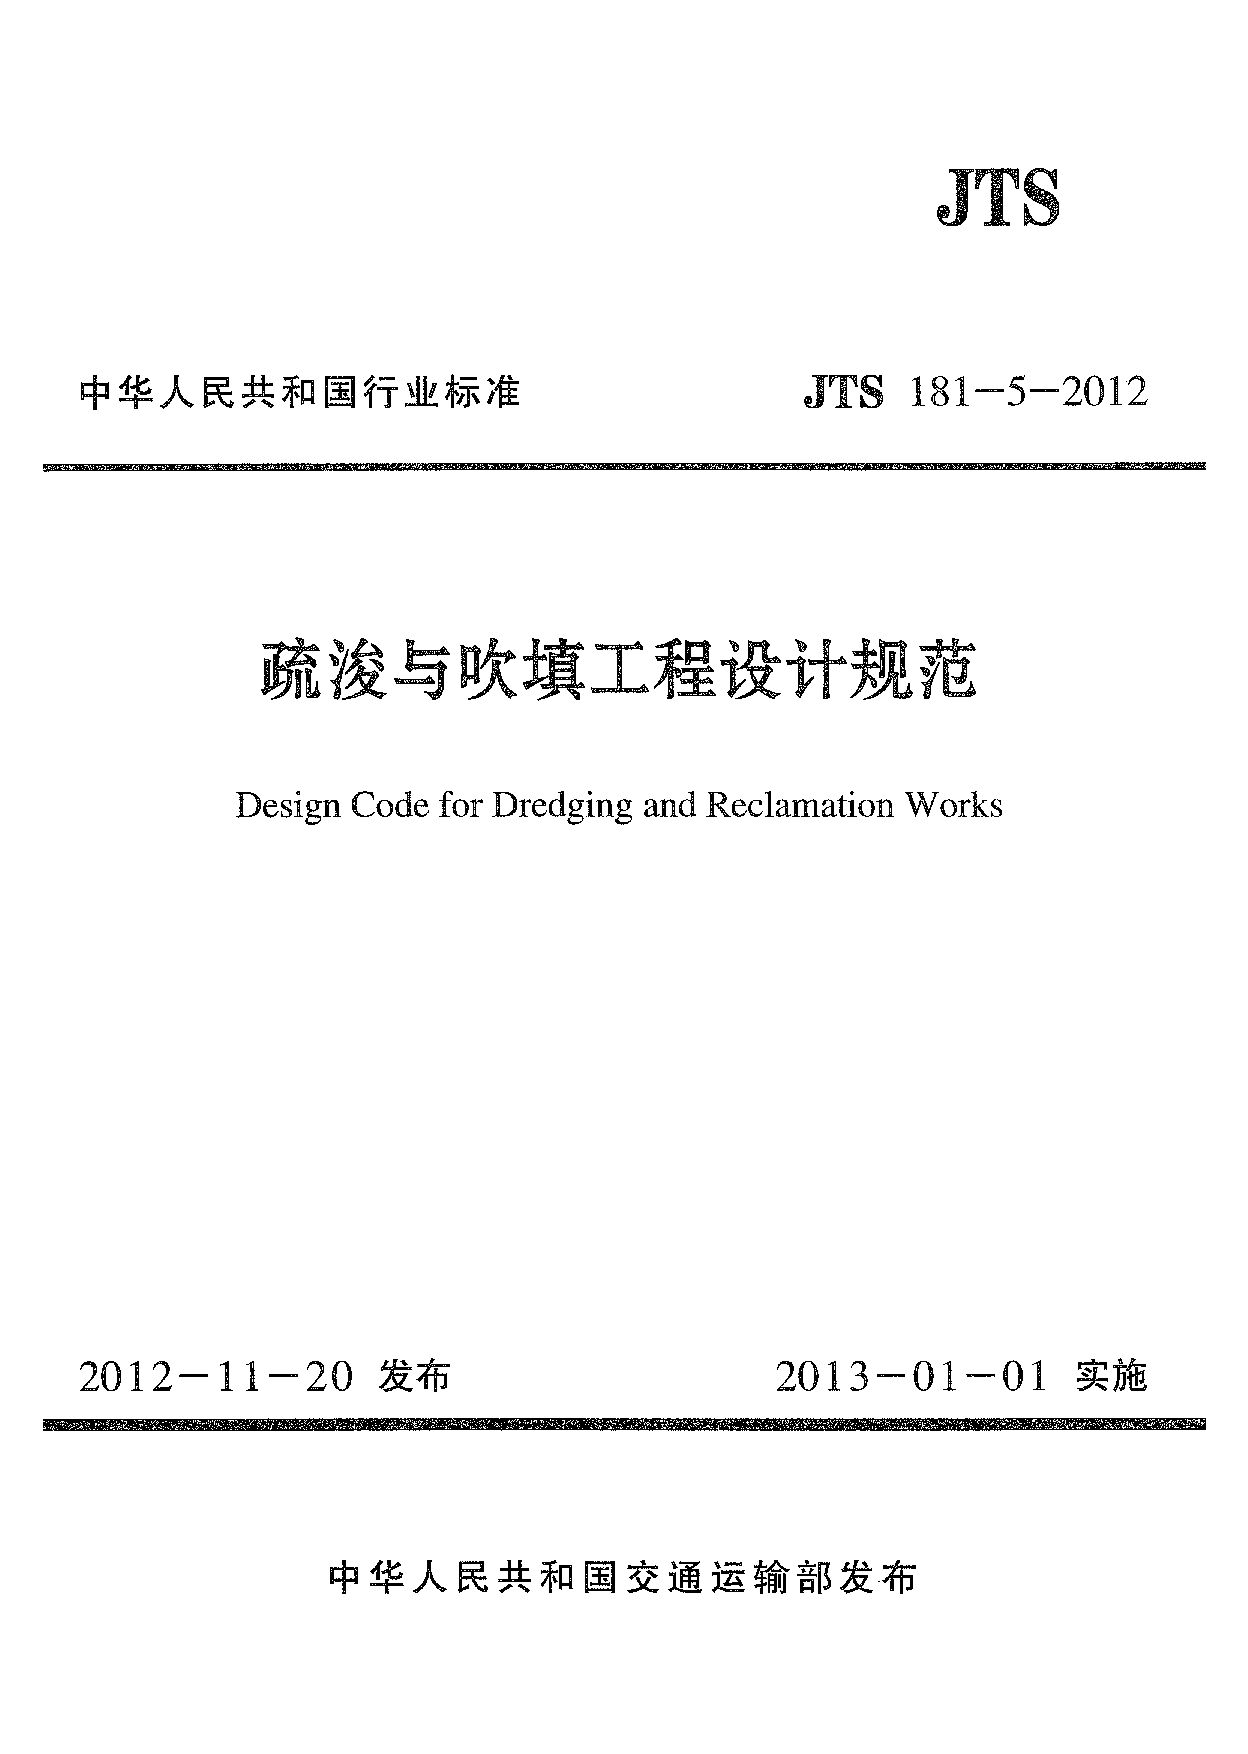 JTS 181-5-2012封面图